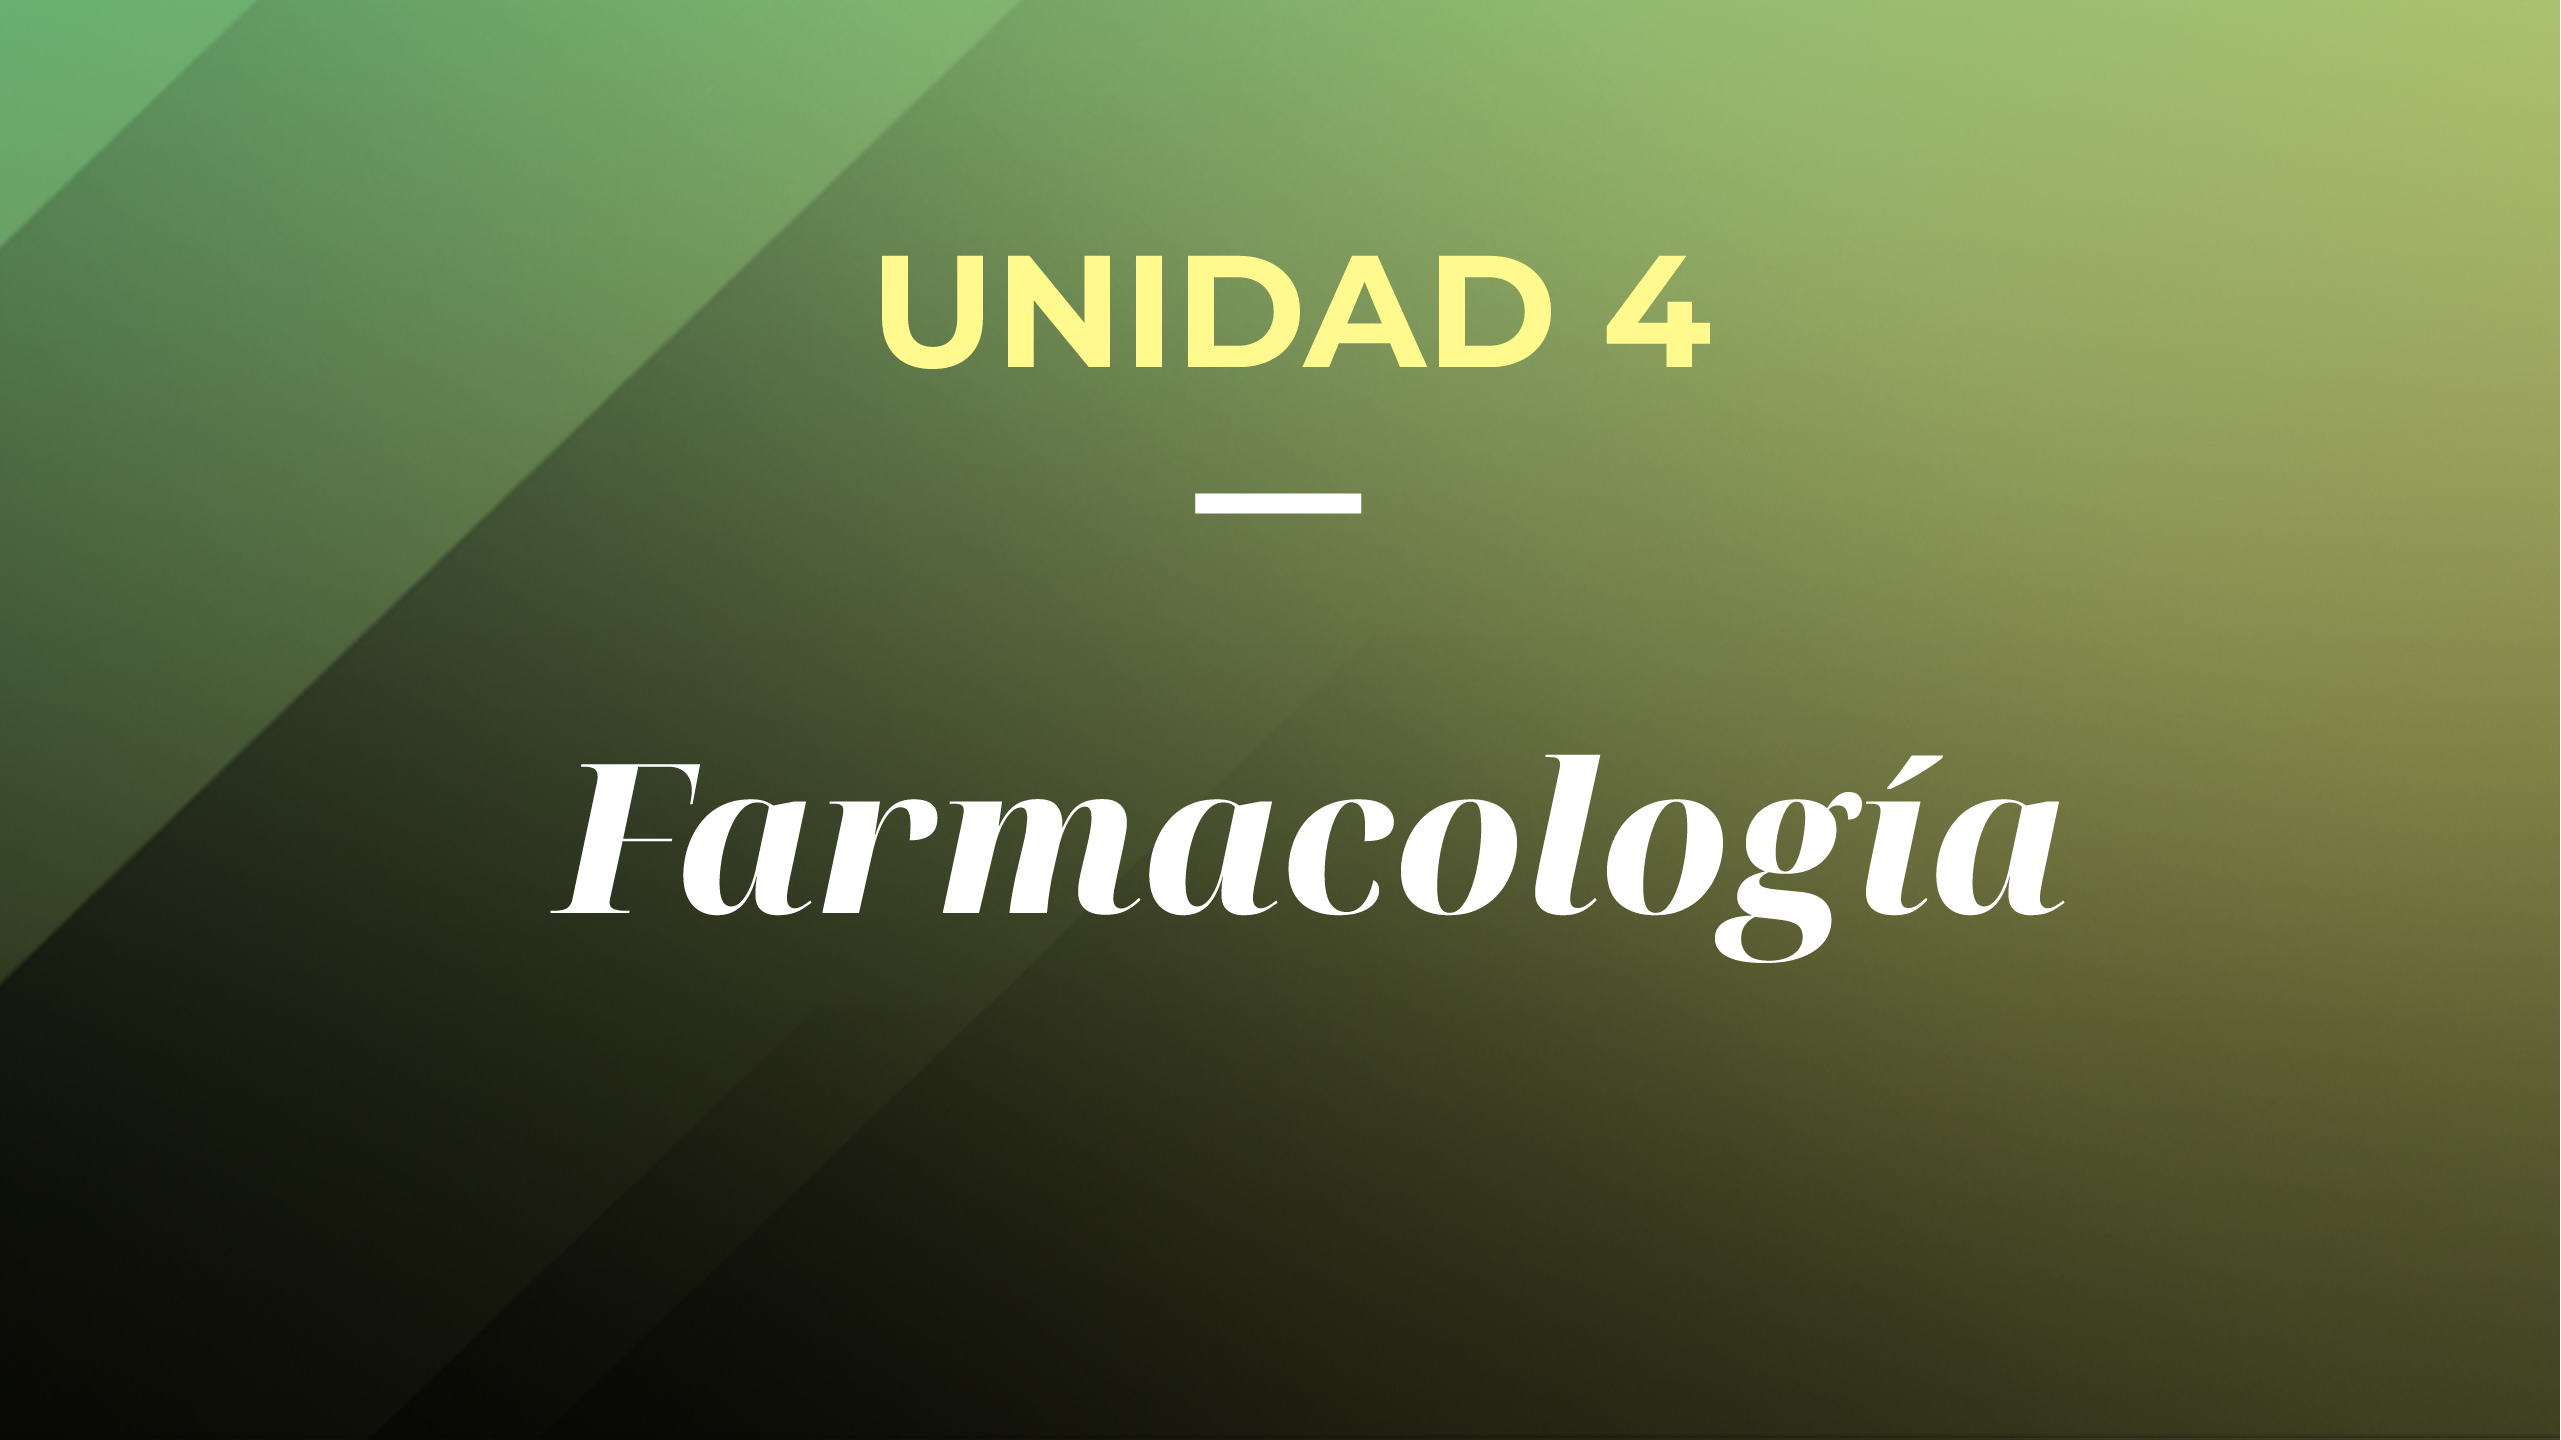 UNIDAD 4. Farmacología